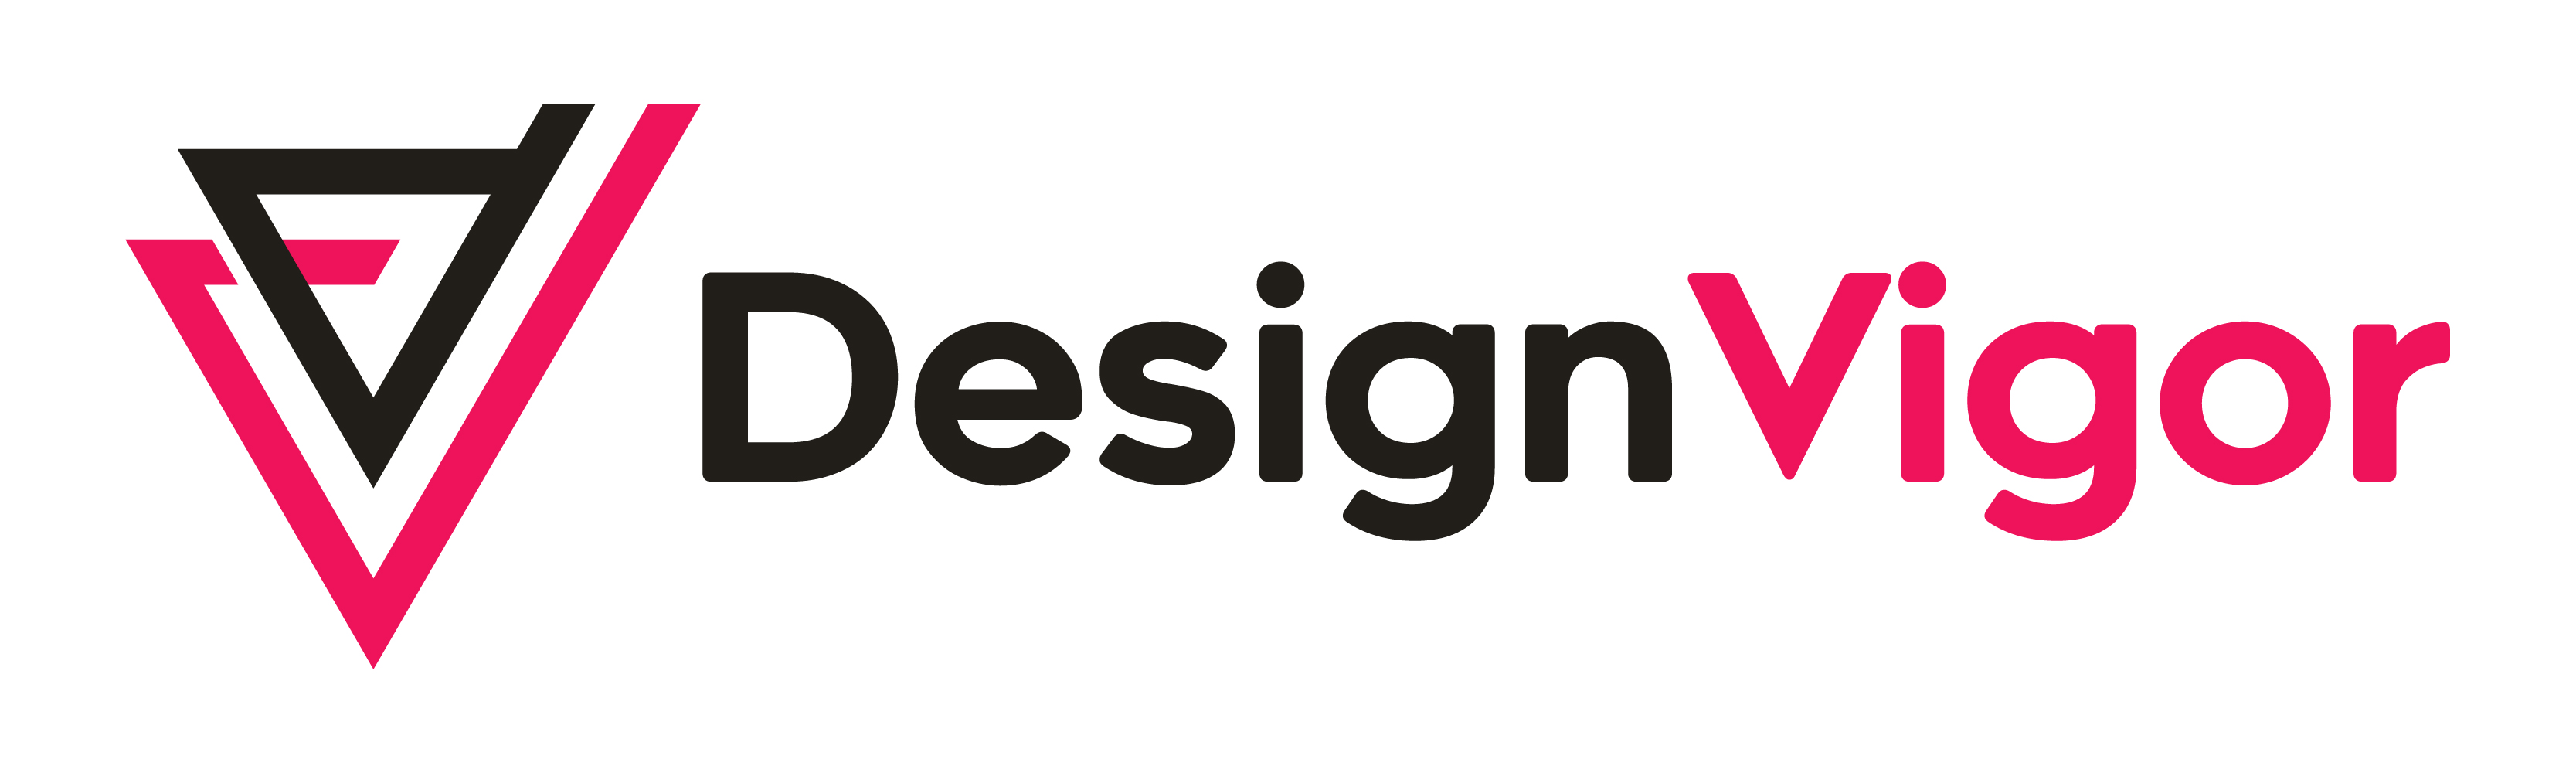 Design Vigor Banner